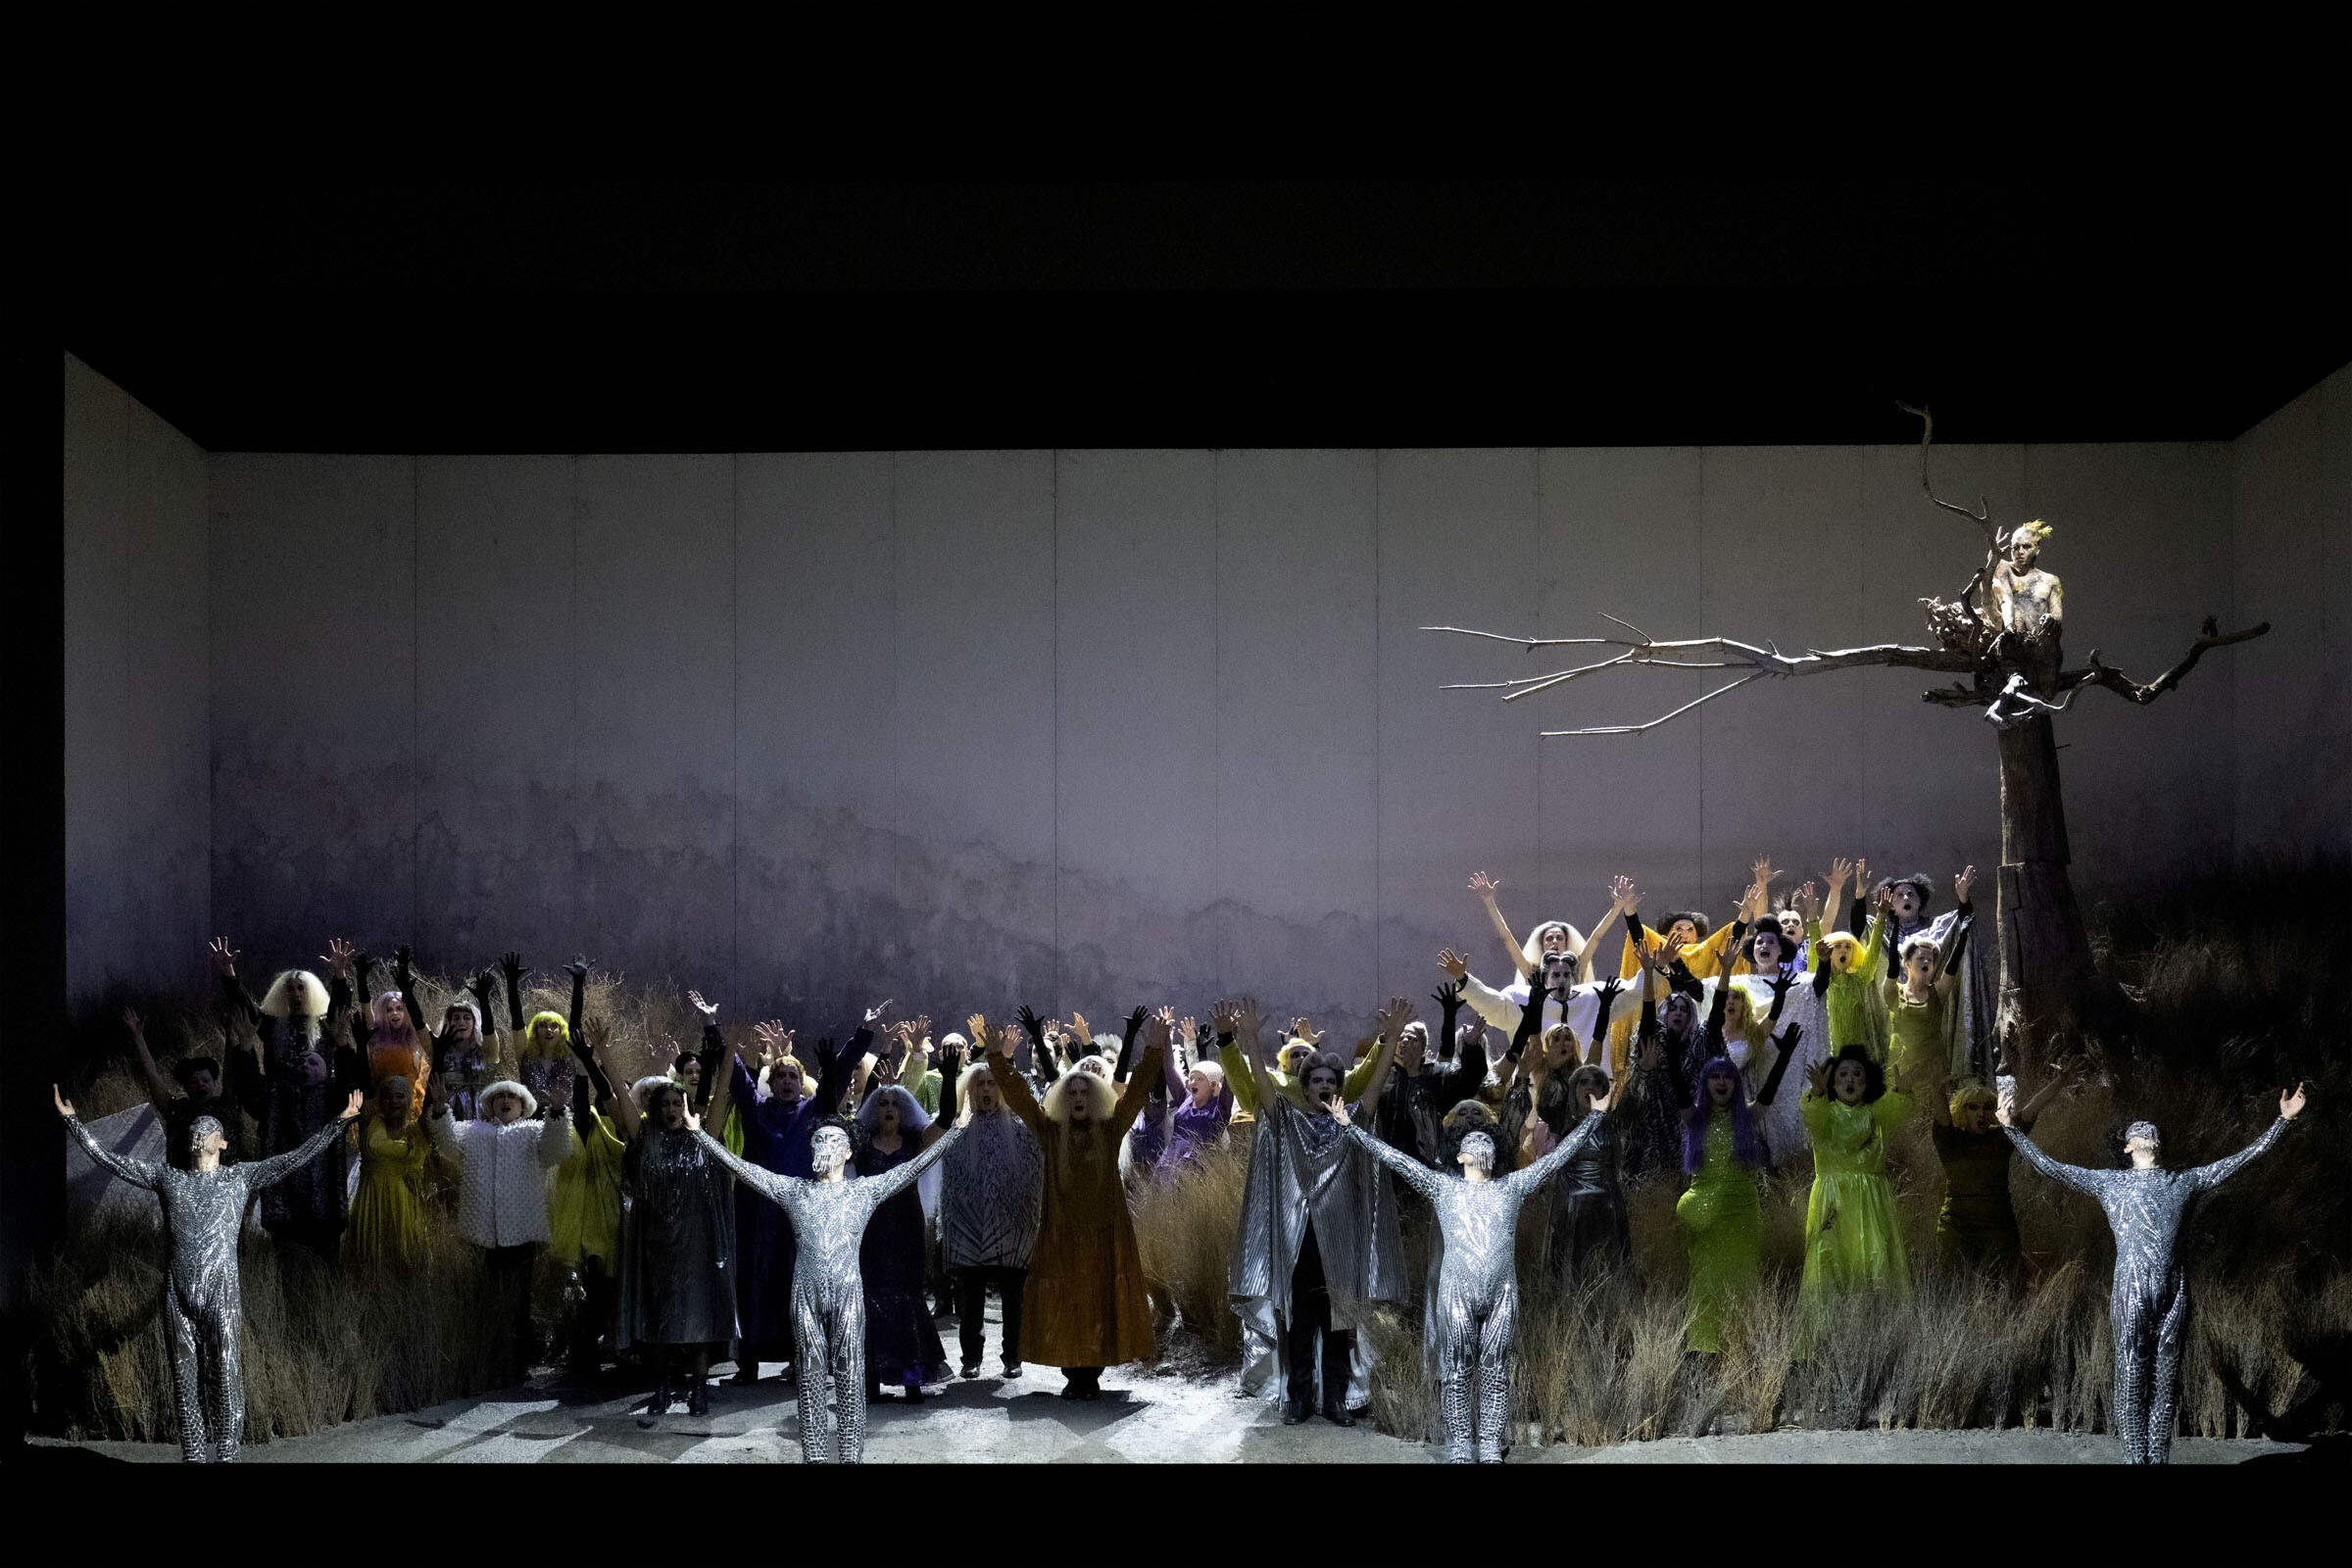 Viele Darsteller:innen auf der Bühne, rechts ein Baum ohne Blätter, darauf sitzend Figur goldener Hahn